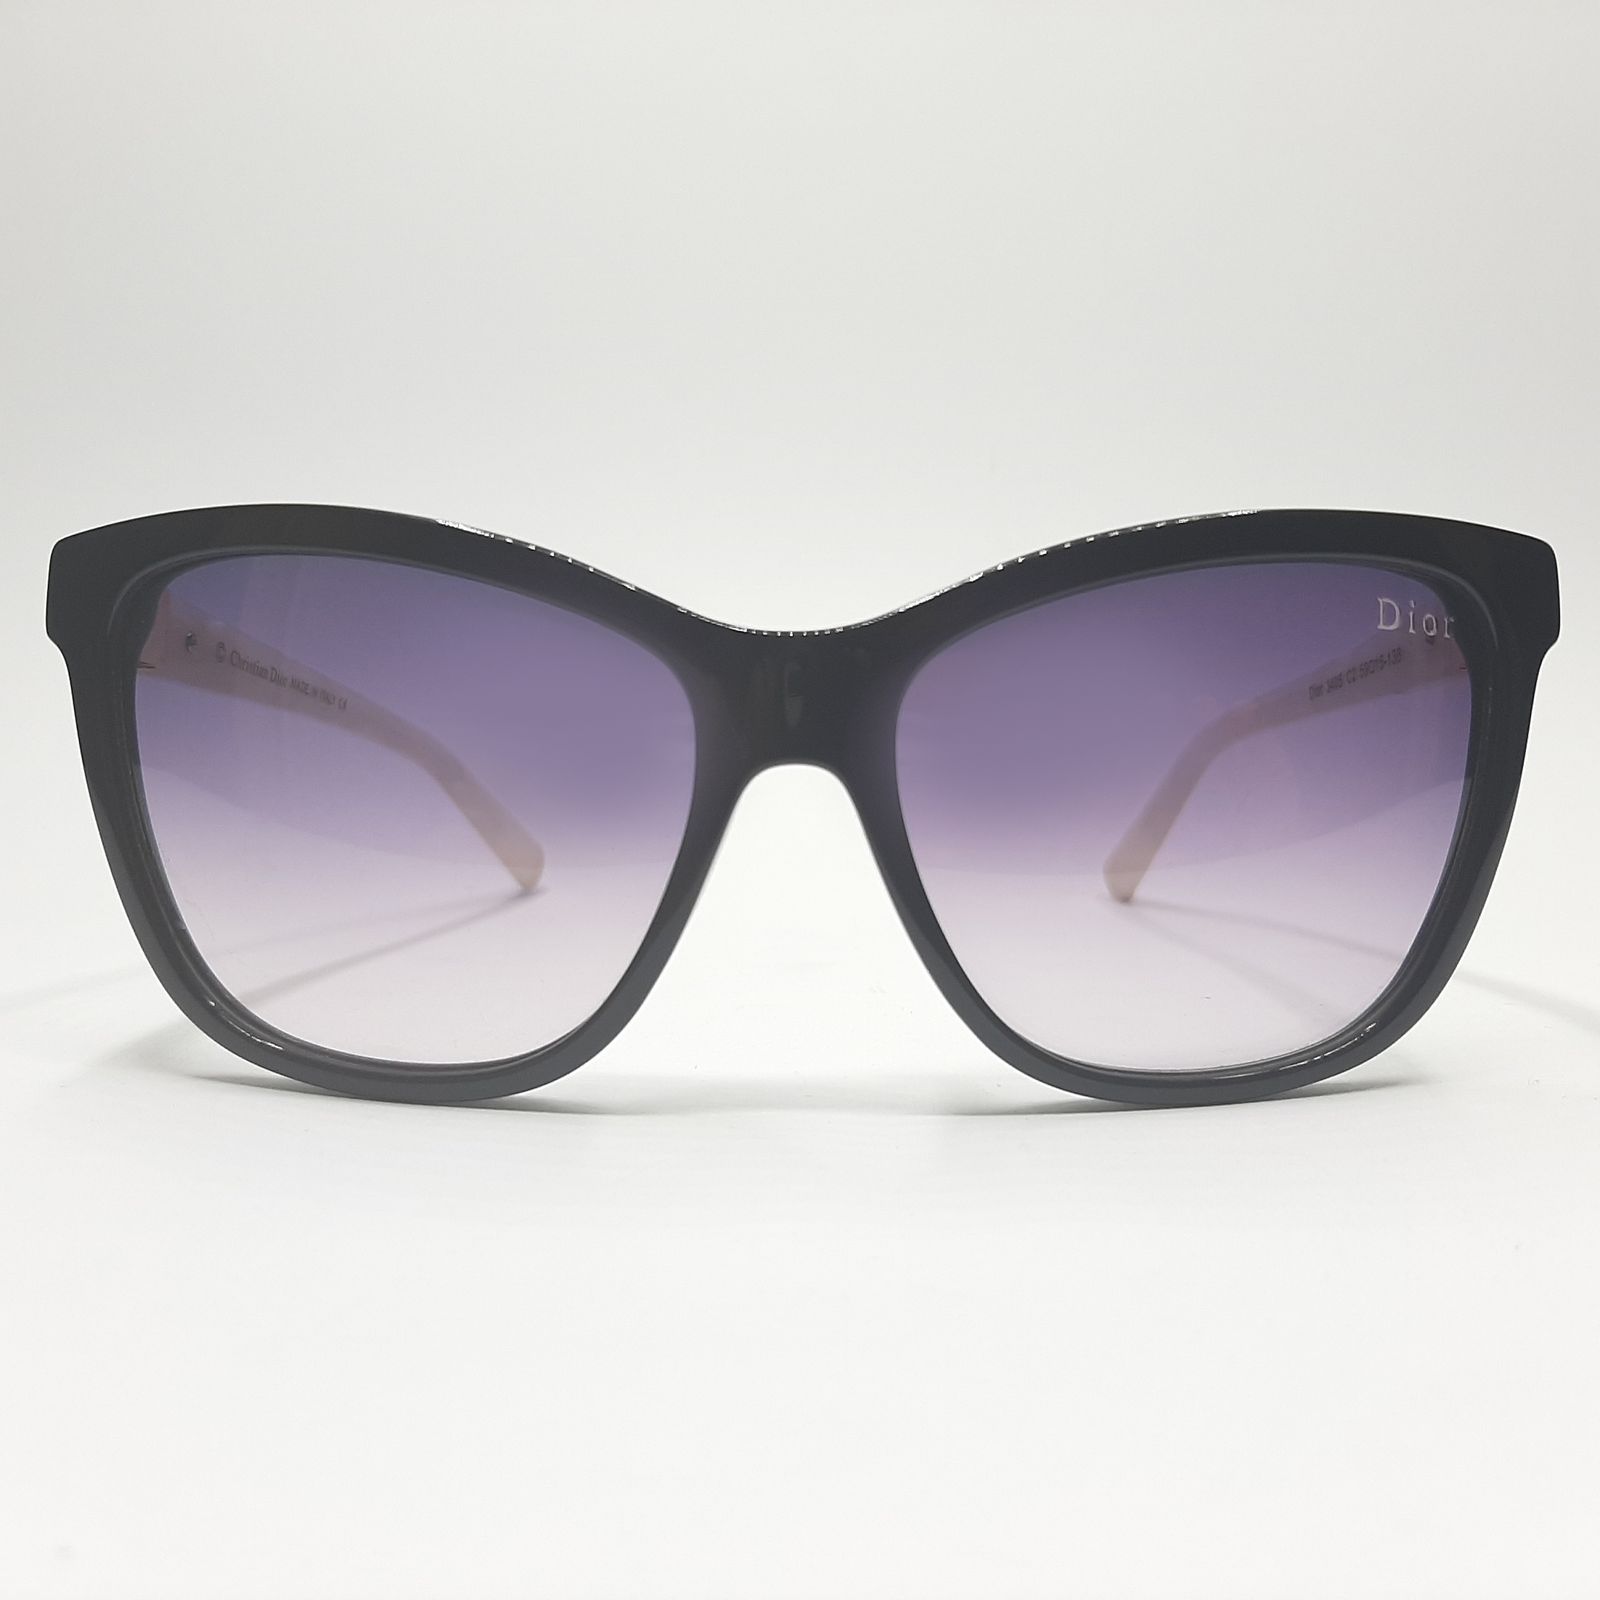 عینک آفتابی زنانه دیور مدل DI3405c2 -  - 3